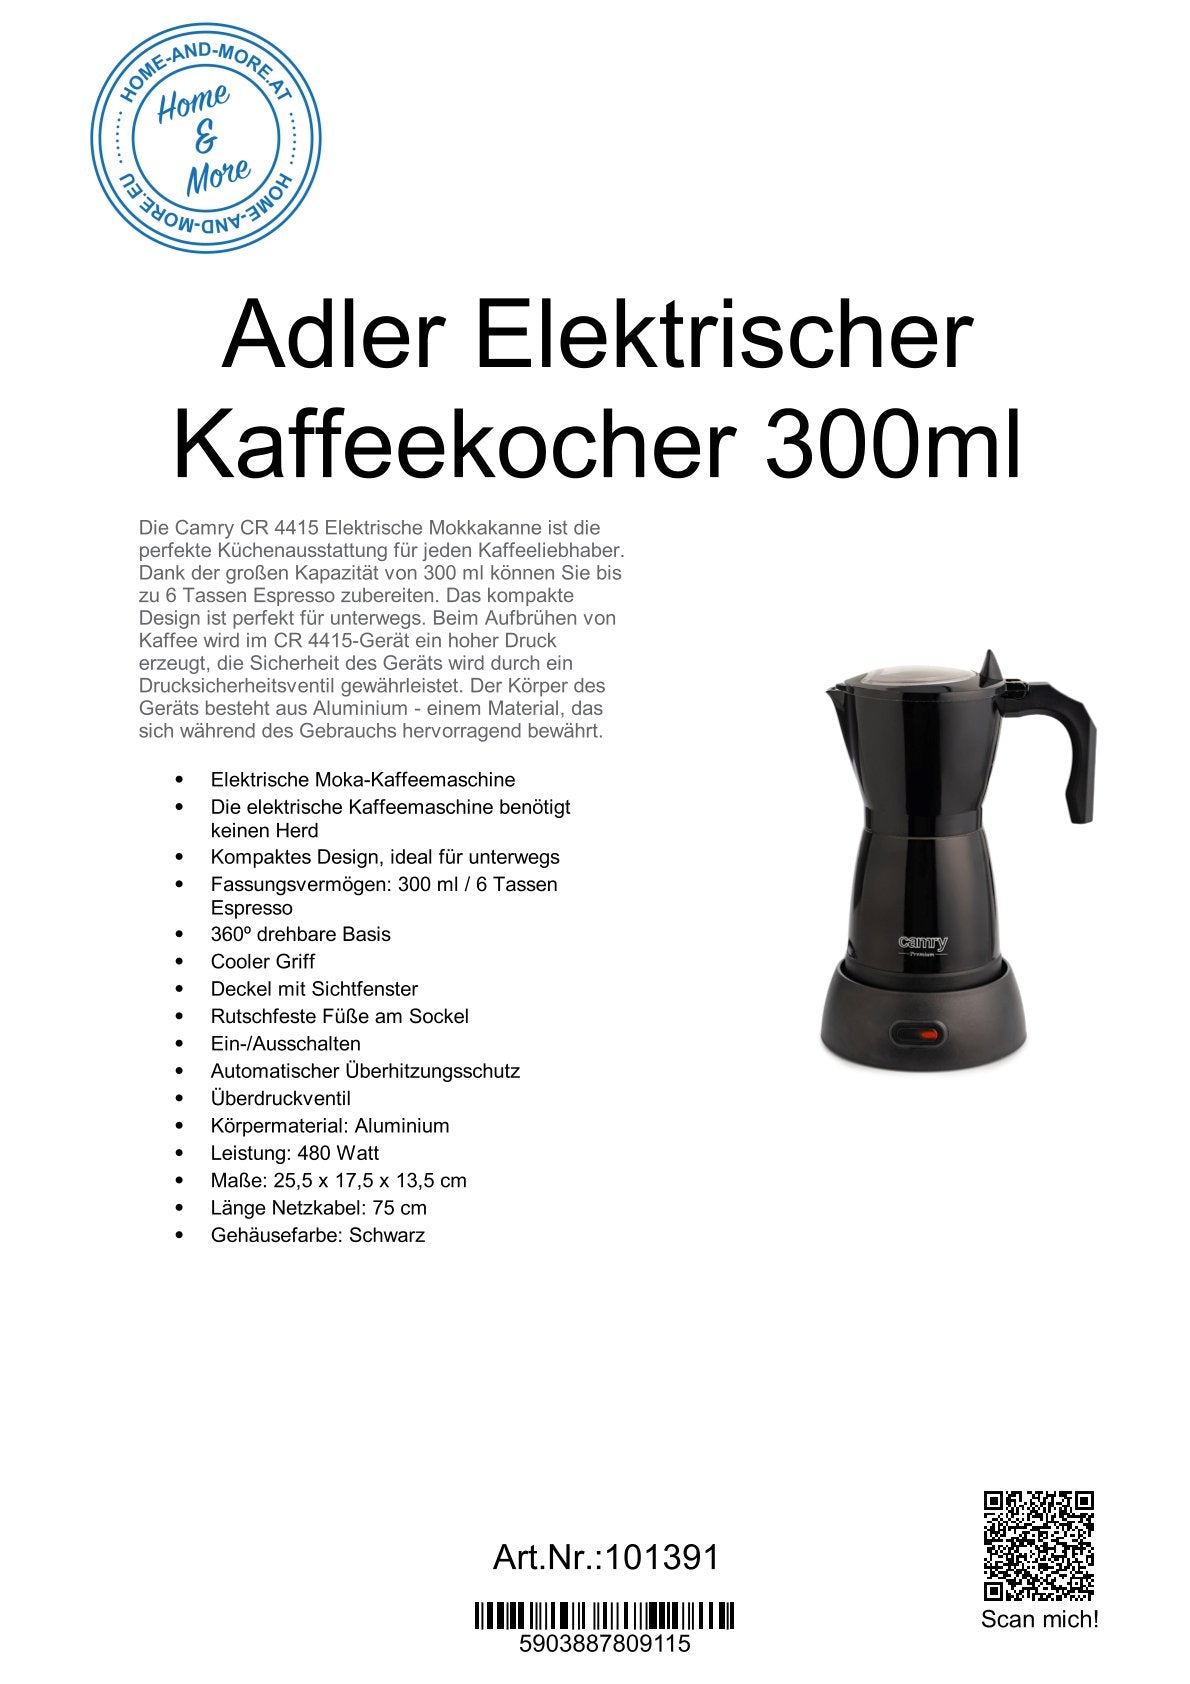 Adler Elektrischer Kaffeekocher 300ml CR 4415B